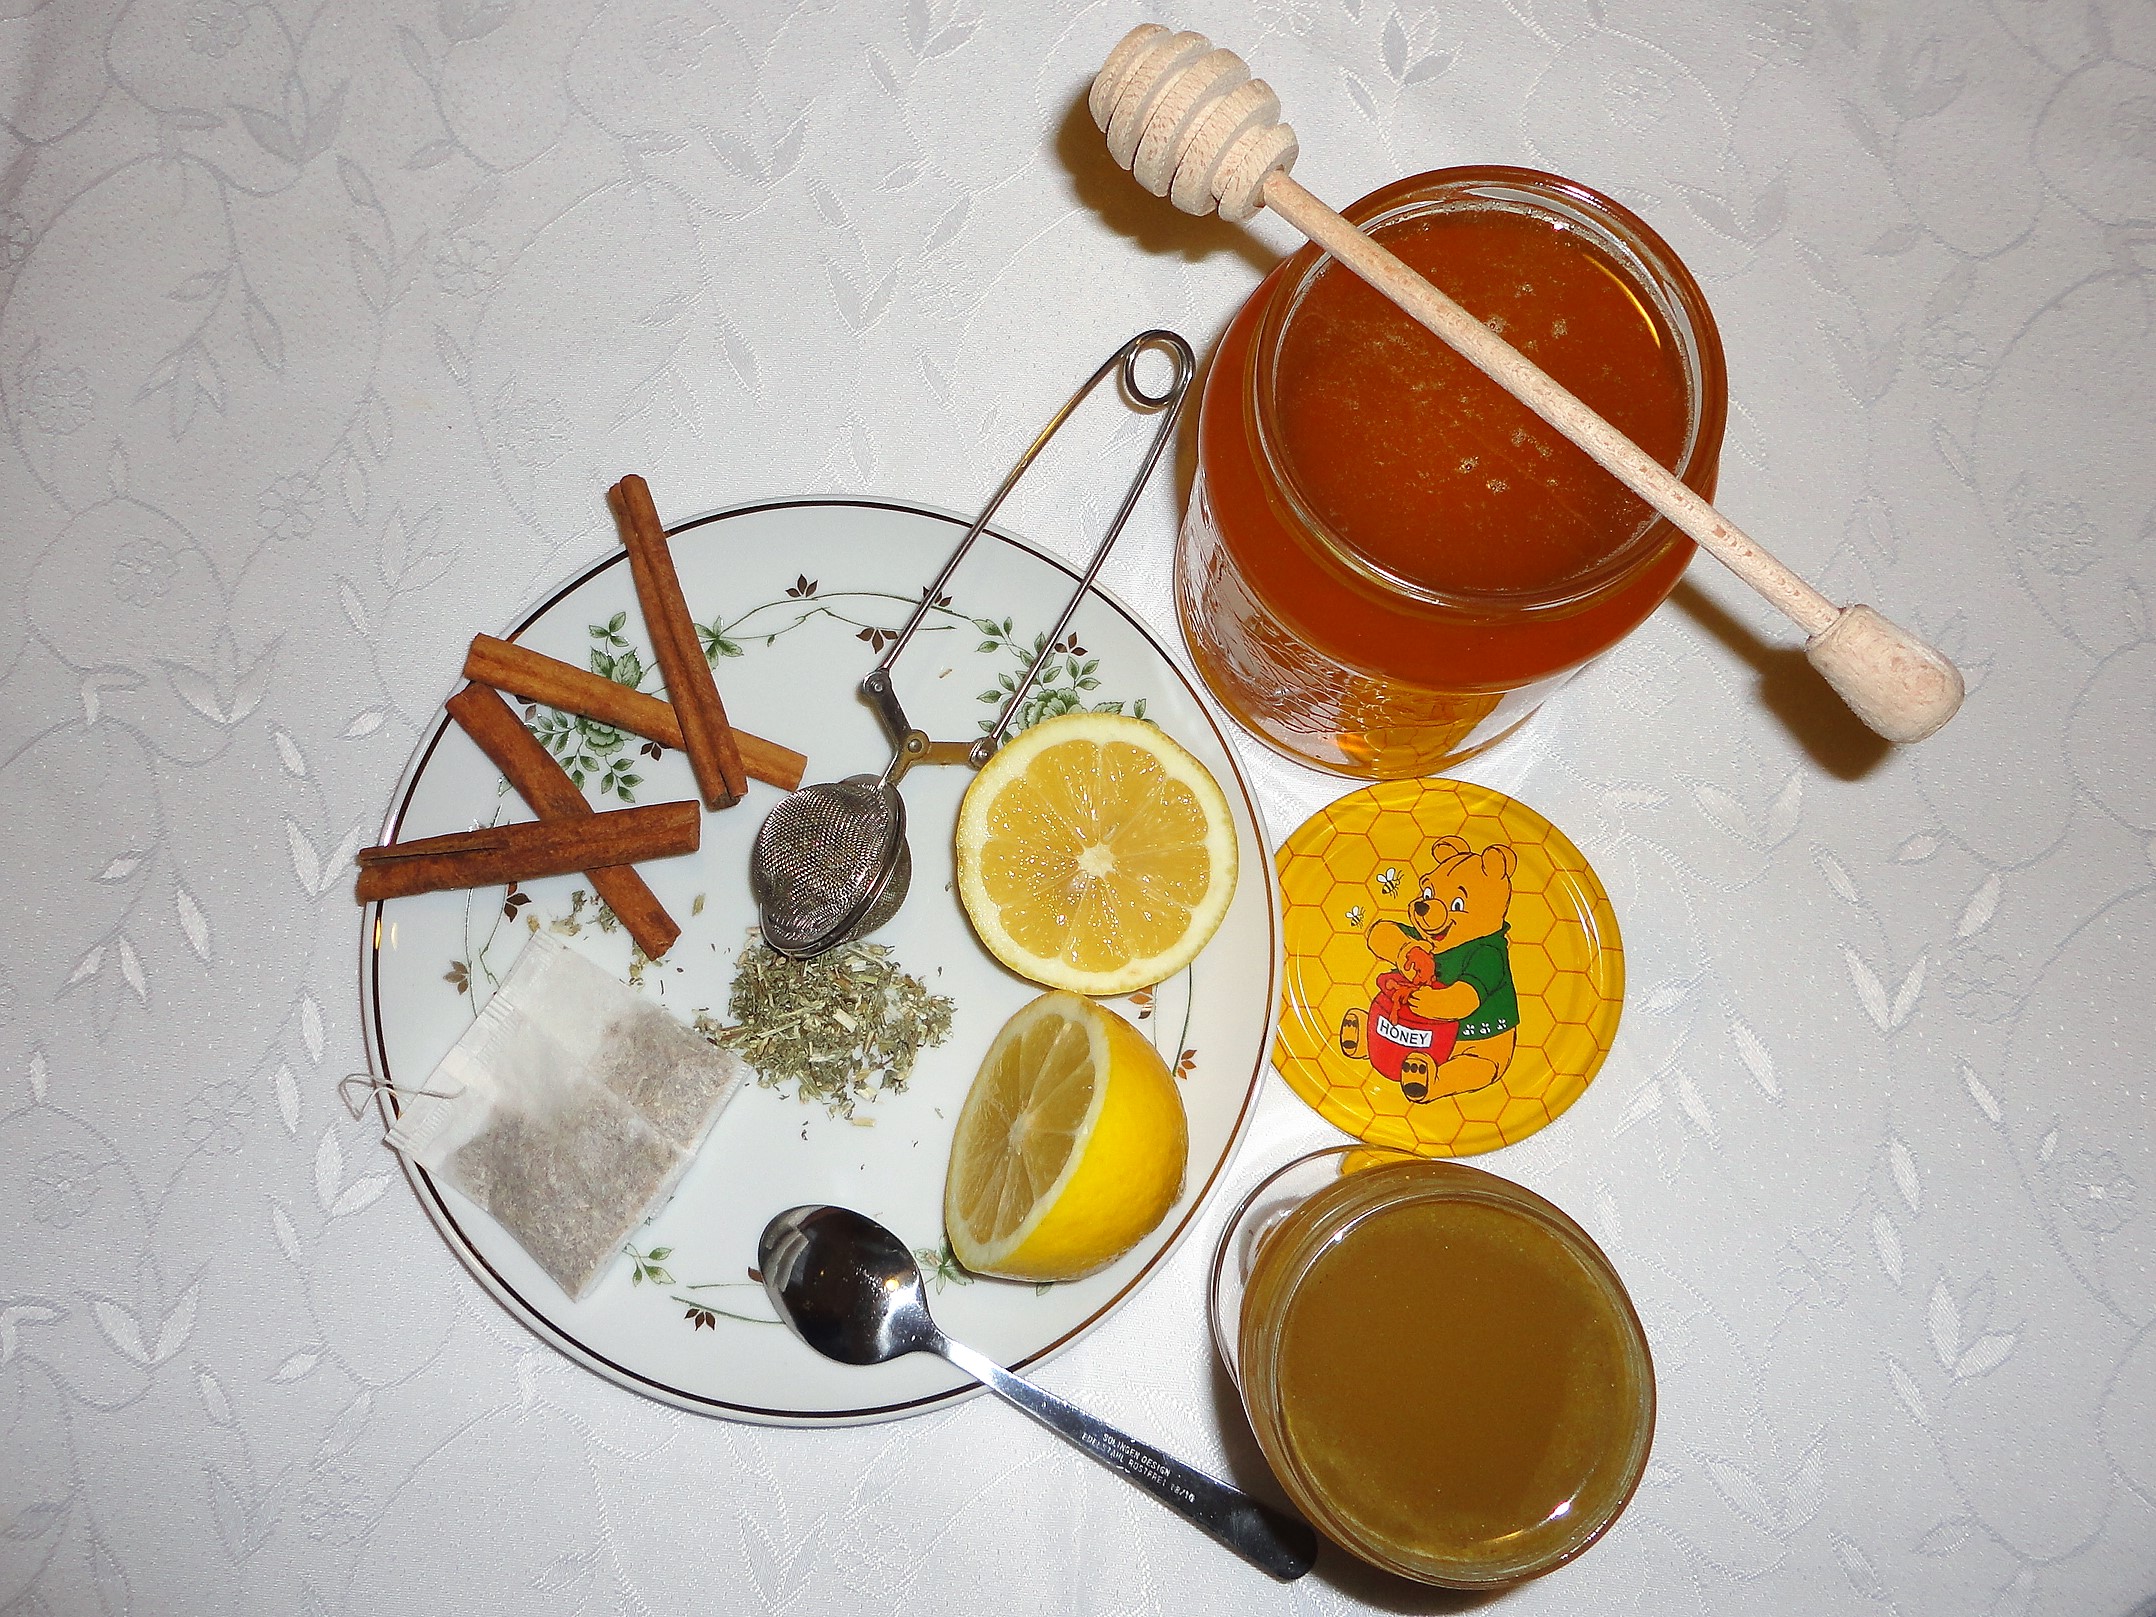 méz mézes tea propoliszos méz méhanyuci tea megfázás nátha receptek